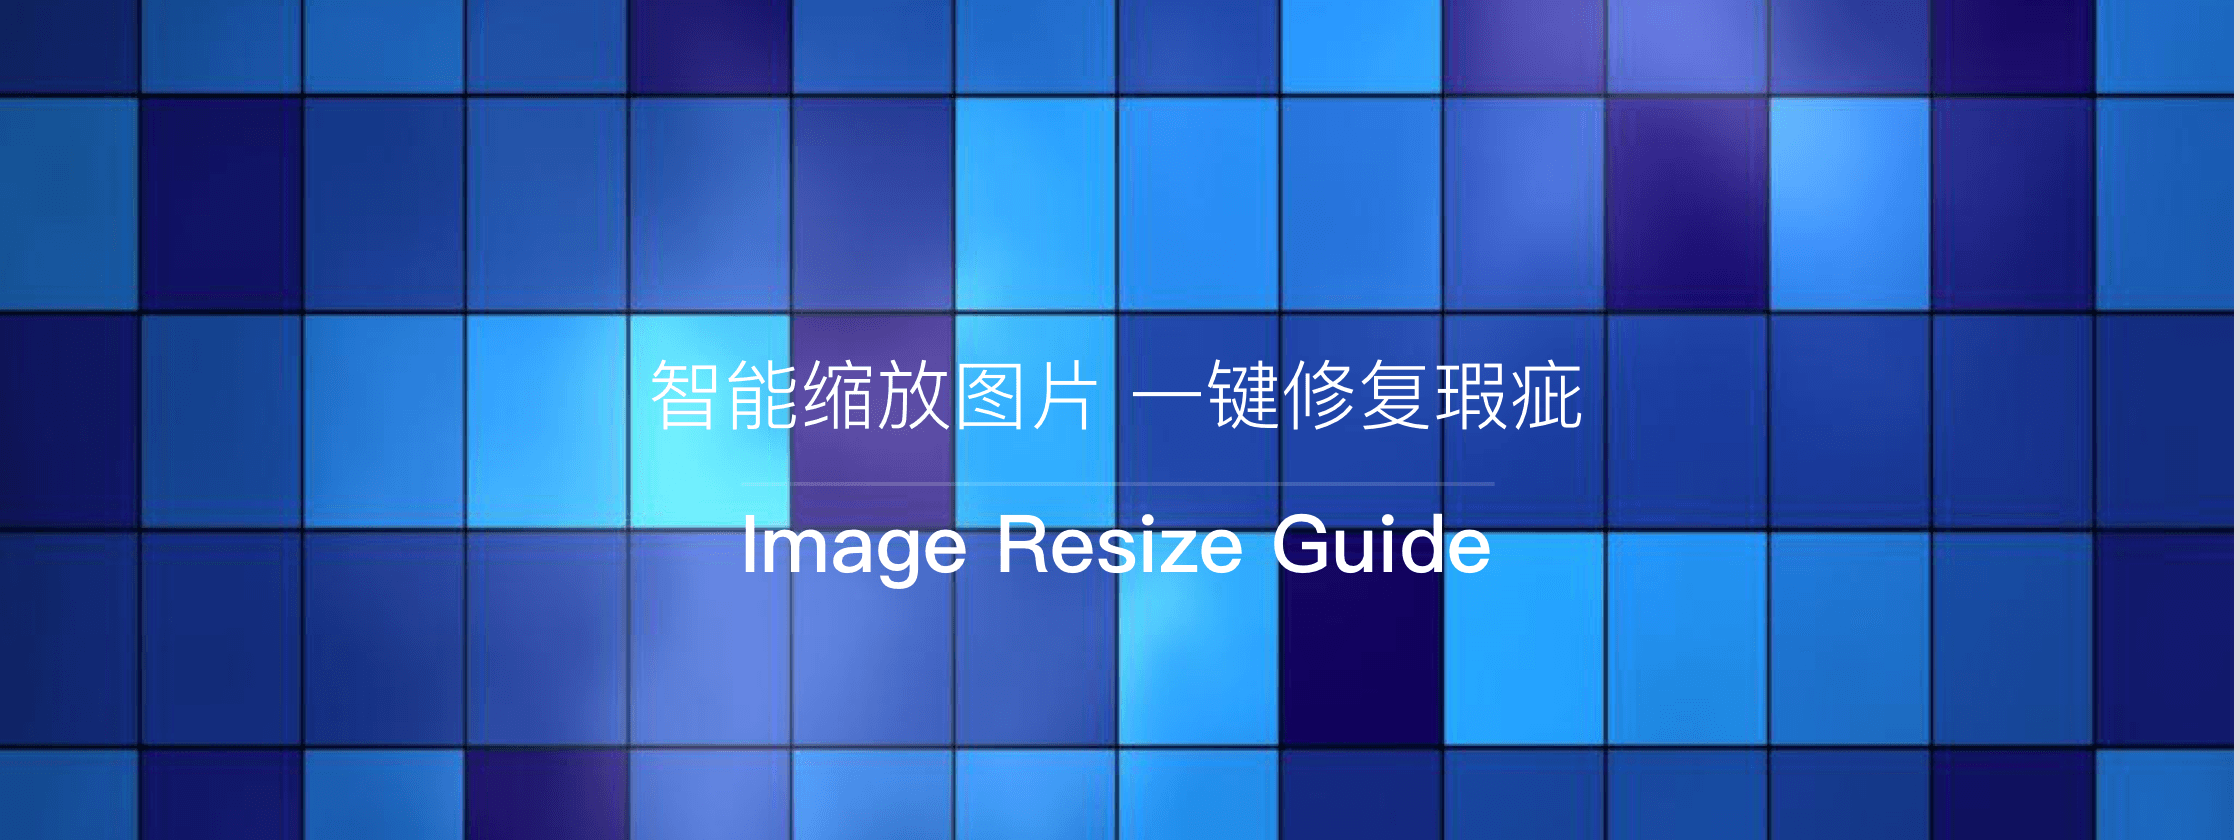 Image Resize Guide – 智能缩放图片 一键修复瑕疵